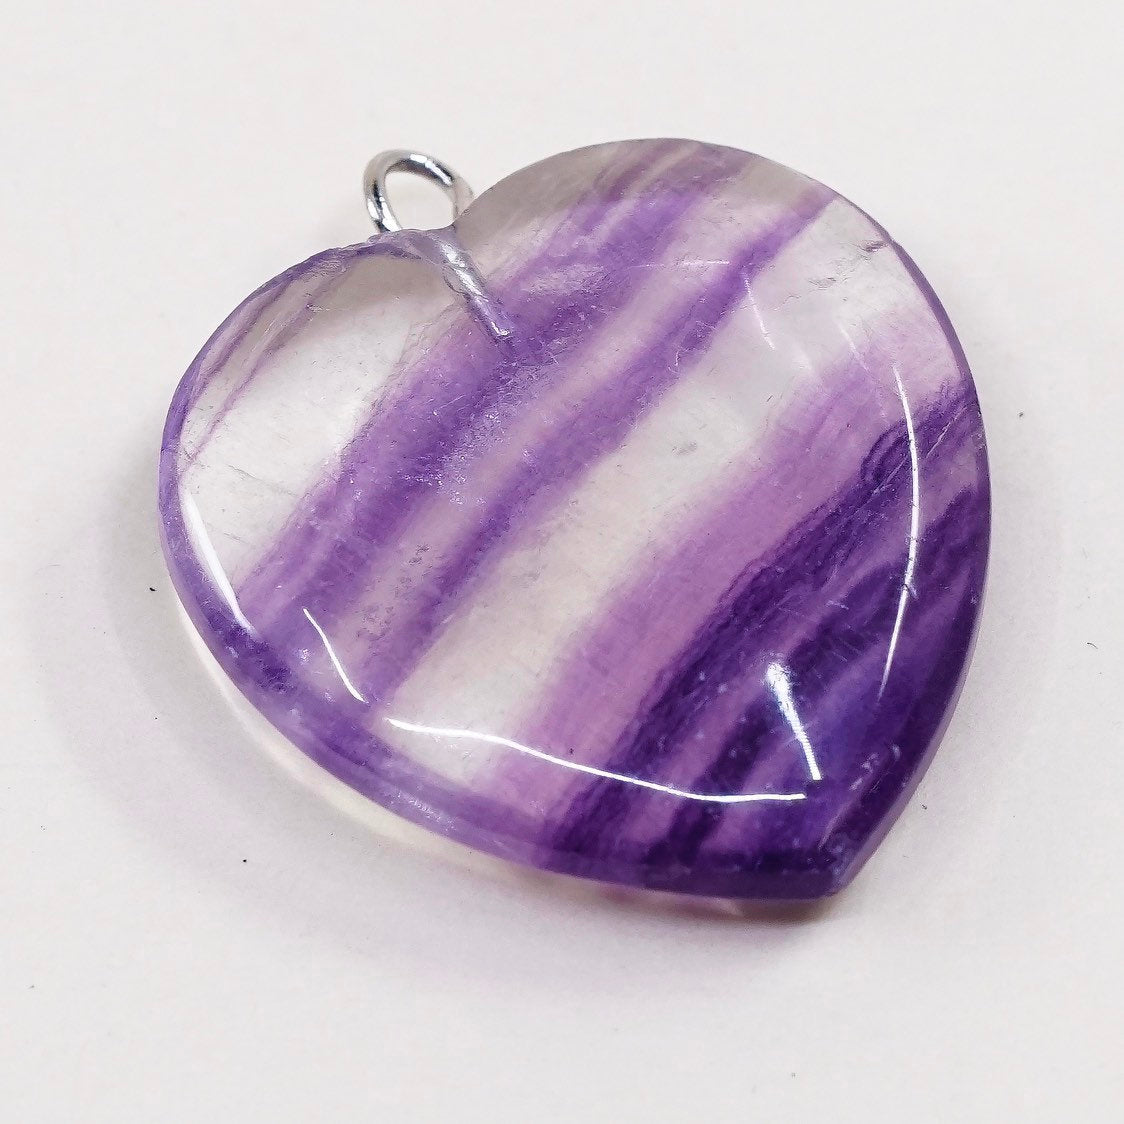 VTG handmade sterling silver charm, 925 purple fluorite heart pendant